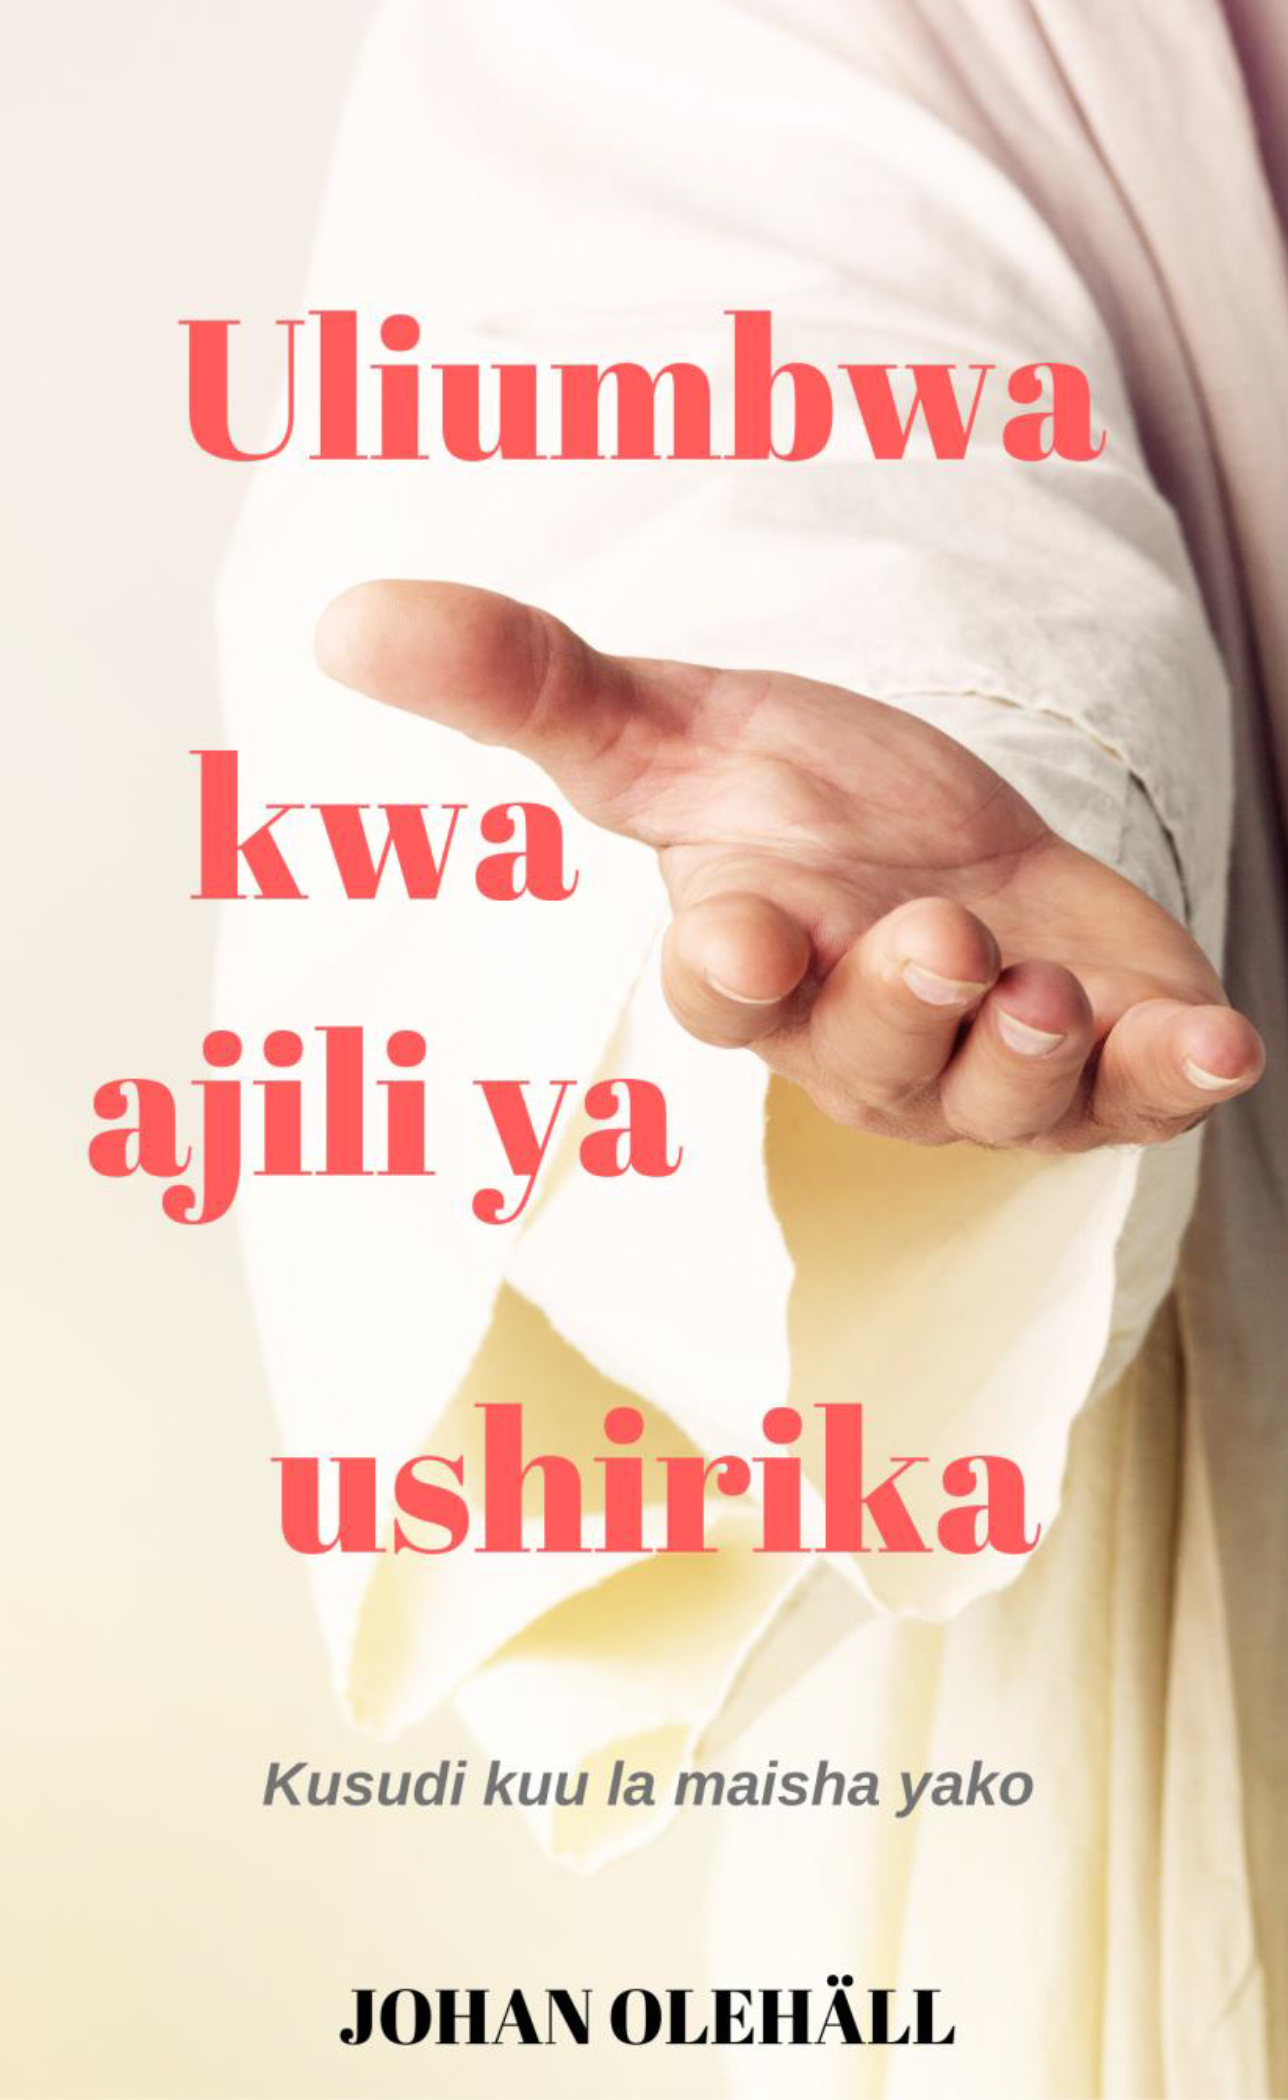 Uliumbwa kwa ajili ya ushirika (Swahili e-book)